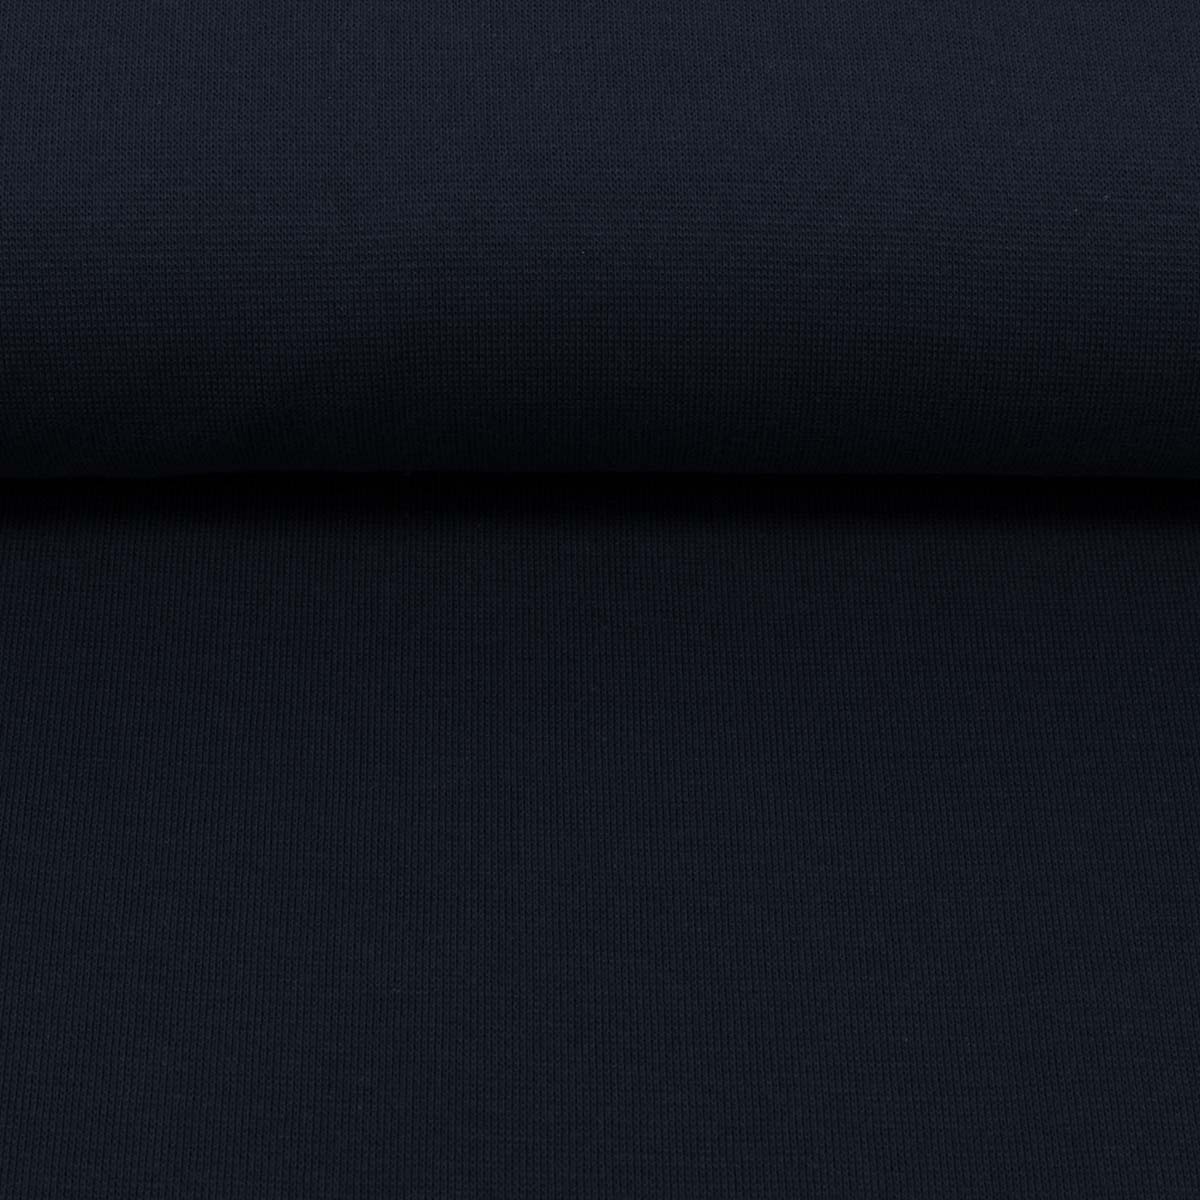 Bündchen - Heike in schwarzblau von Swafing